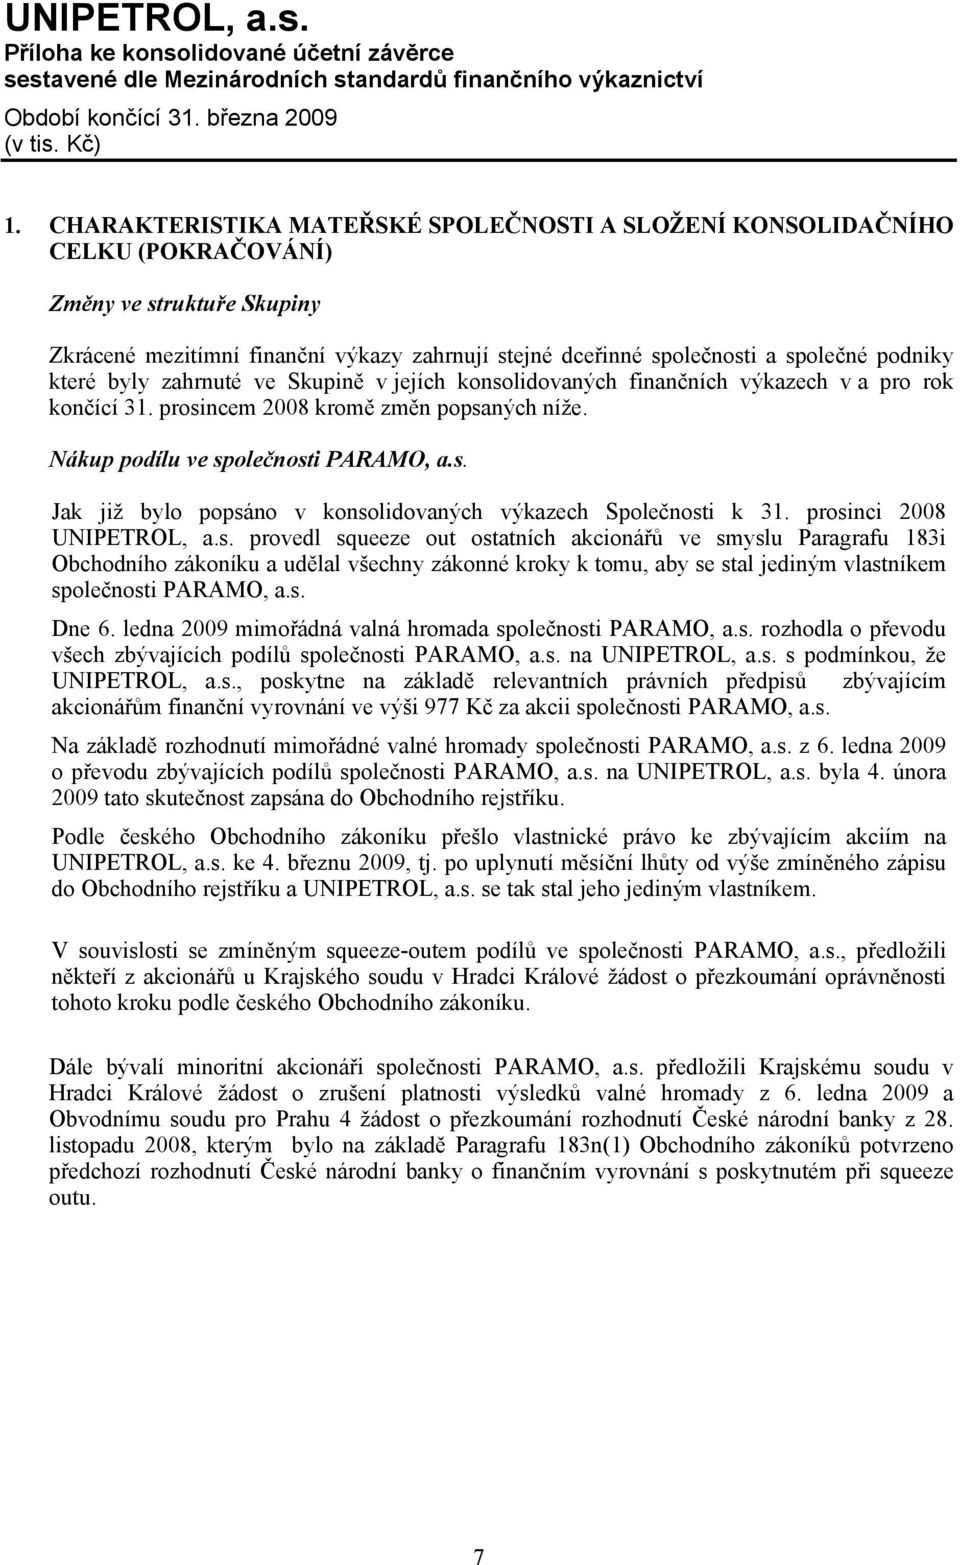 prosinci 2008 UNIPETROL, a.s. provedl squeeze out ostatních akcionářů ve smyslu Paragrafu 183i Obchodního zákoníku a udělal všechny zákonné kroky k tomu, aby se stal jediným vlastníkem společnosti PARAMO, a.